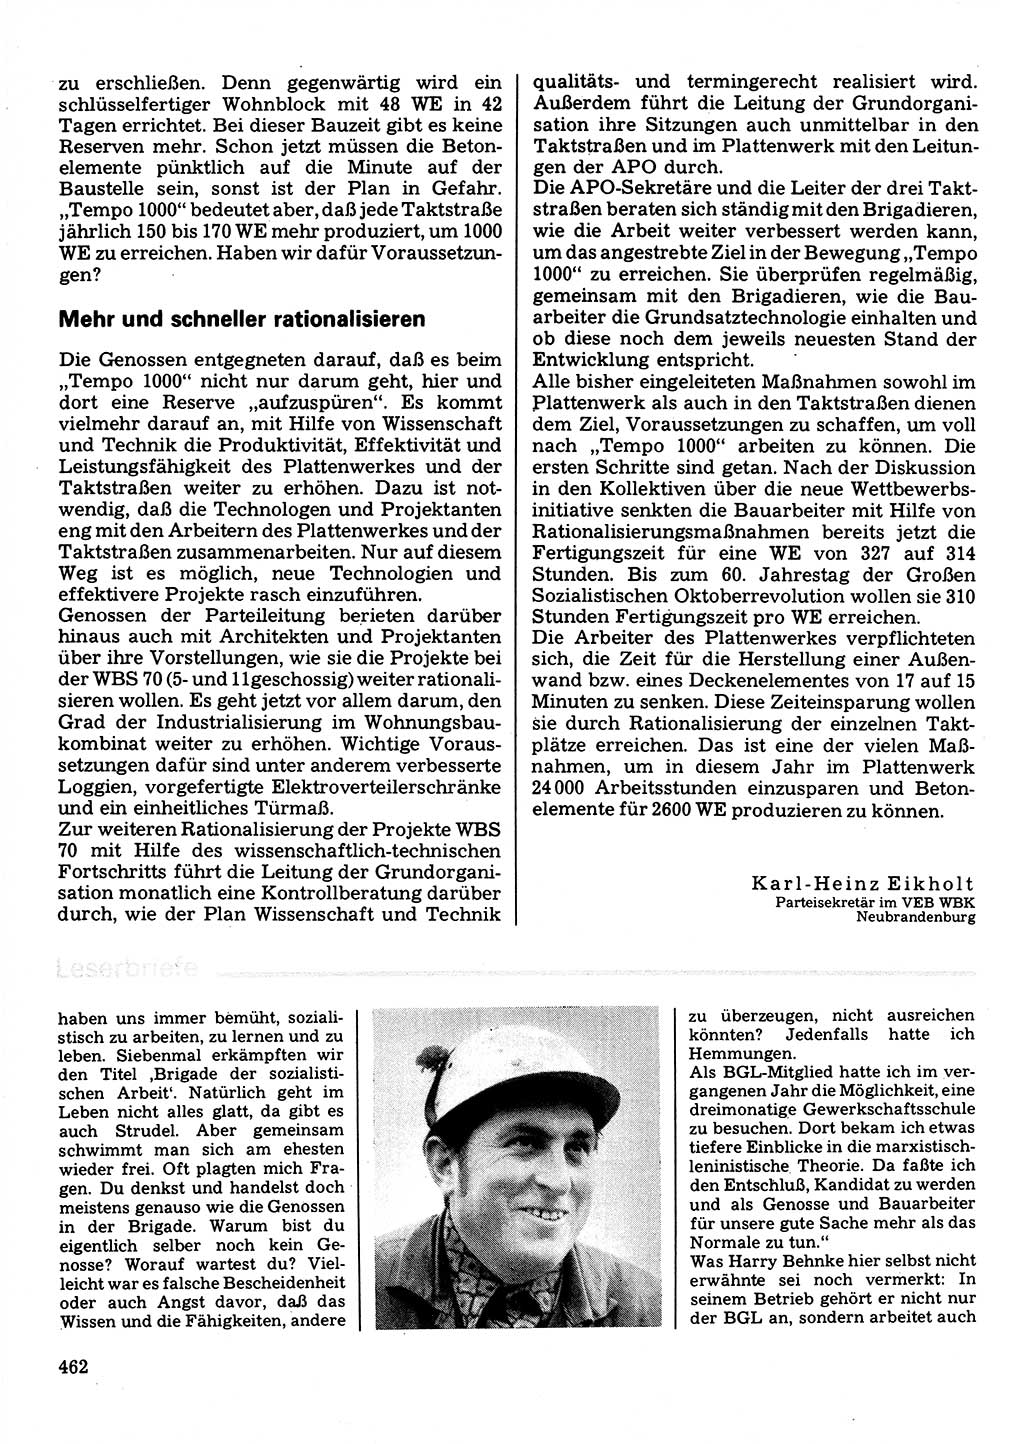 Neuer Weg (NW), Organ des Zentralkomitees (ZK) der SED (Sozialistische Einheitspartei Deutschlands) für Fragen des Parteilebens, 32. Jahrgang [Deutsche Demokratische Republik (DDR)] 1977, Seite 462 (NW ZK SED DDR 1977, S. 462)